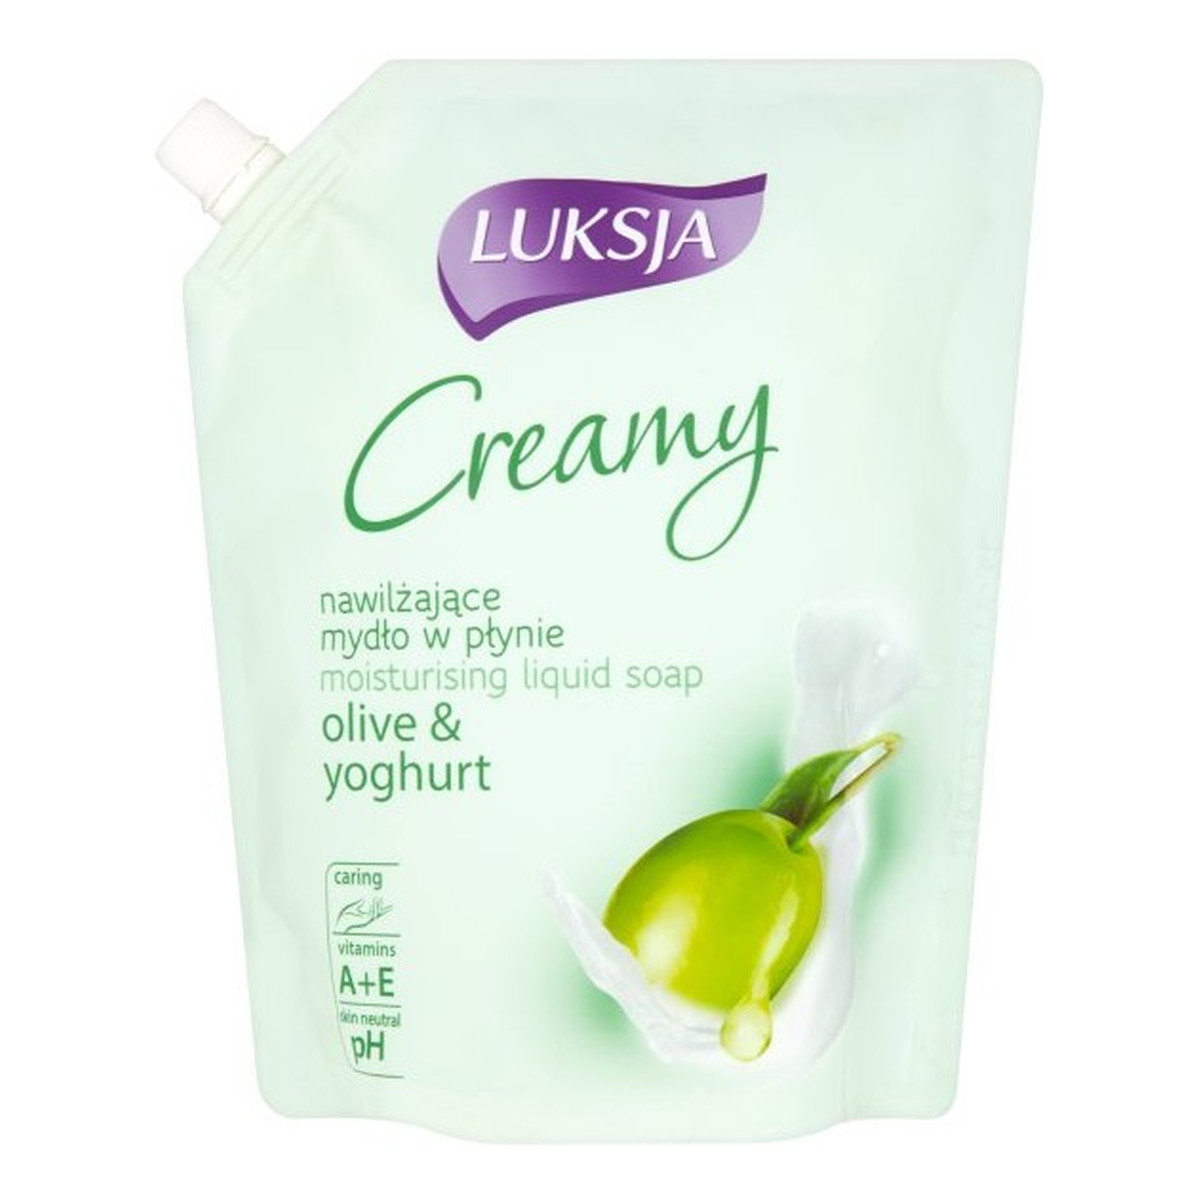 Luksja Creamy Olive & Yoghurt Nawilżające mydło w płynie opakowanie uzupełniające 900ml